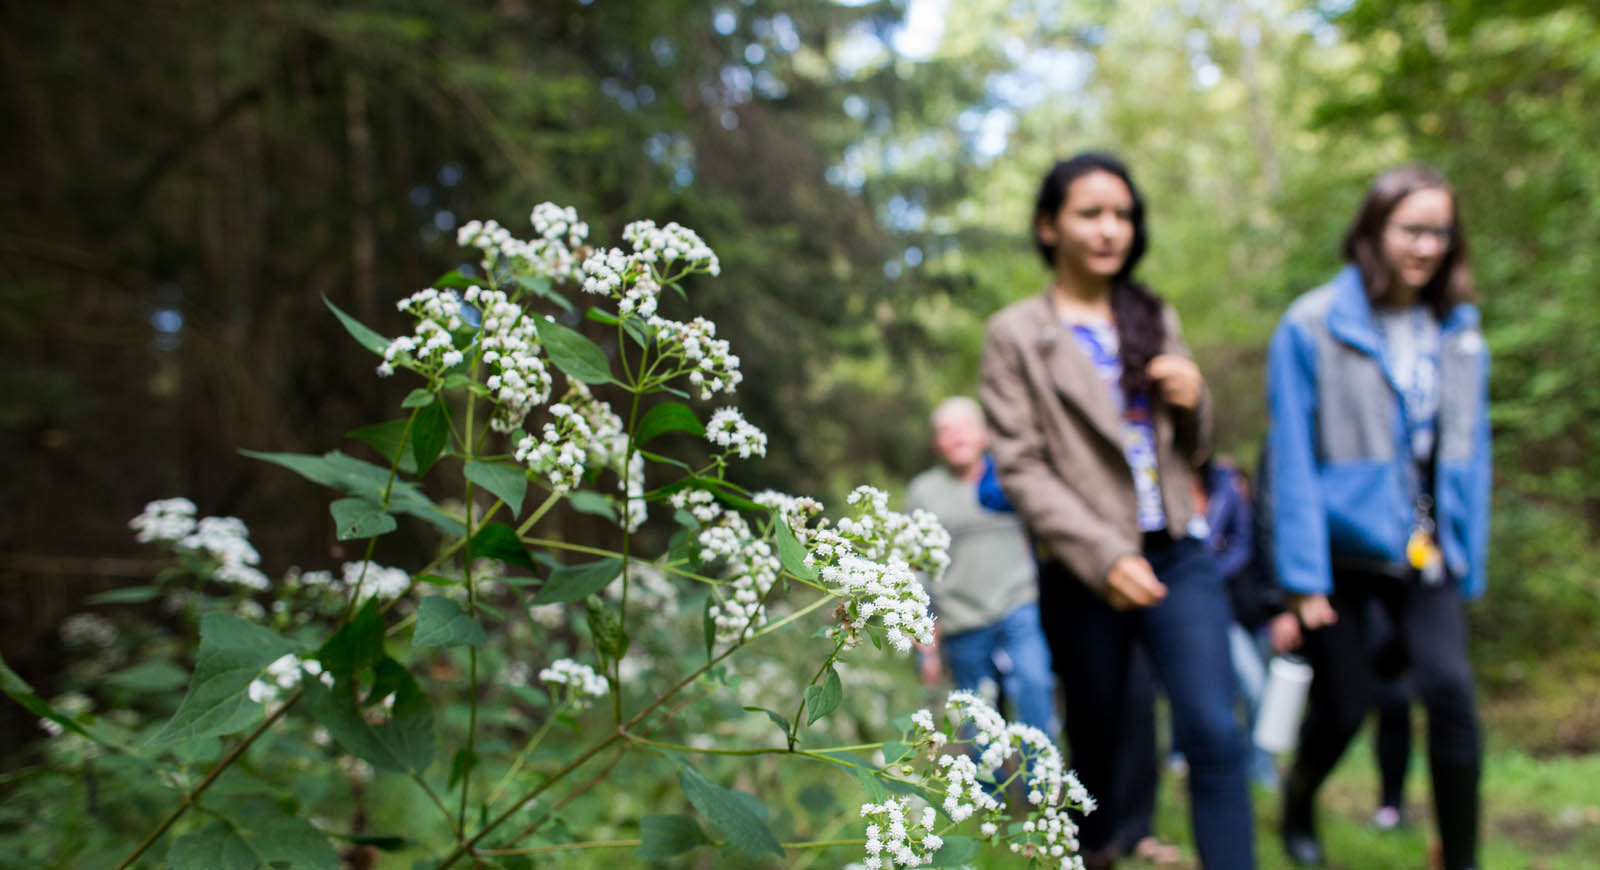 Group of Chatham University students go on nature walk passing white budding plant.